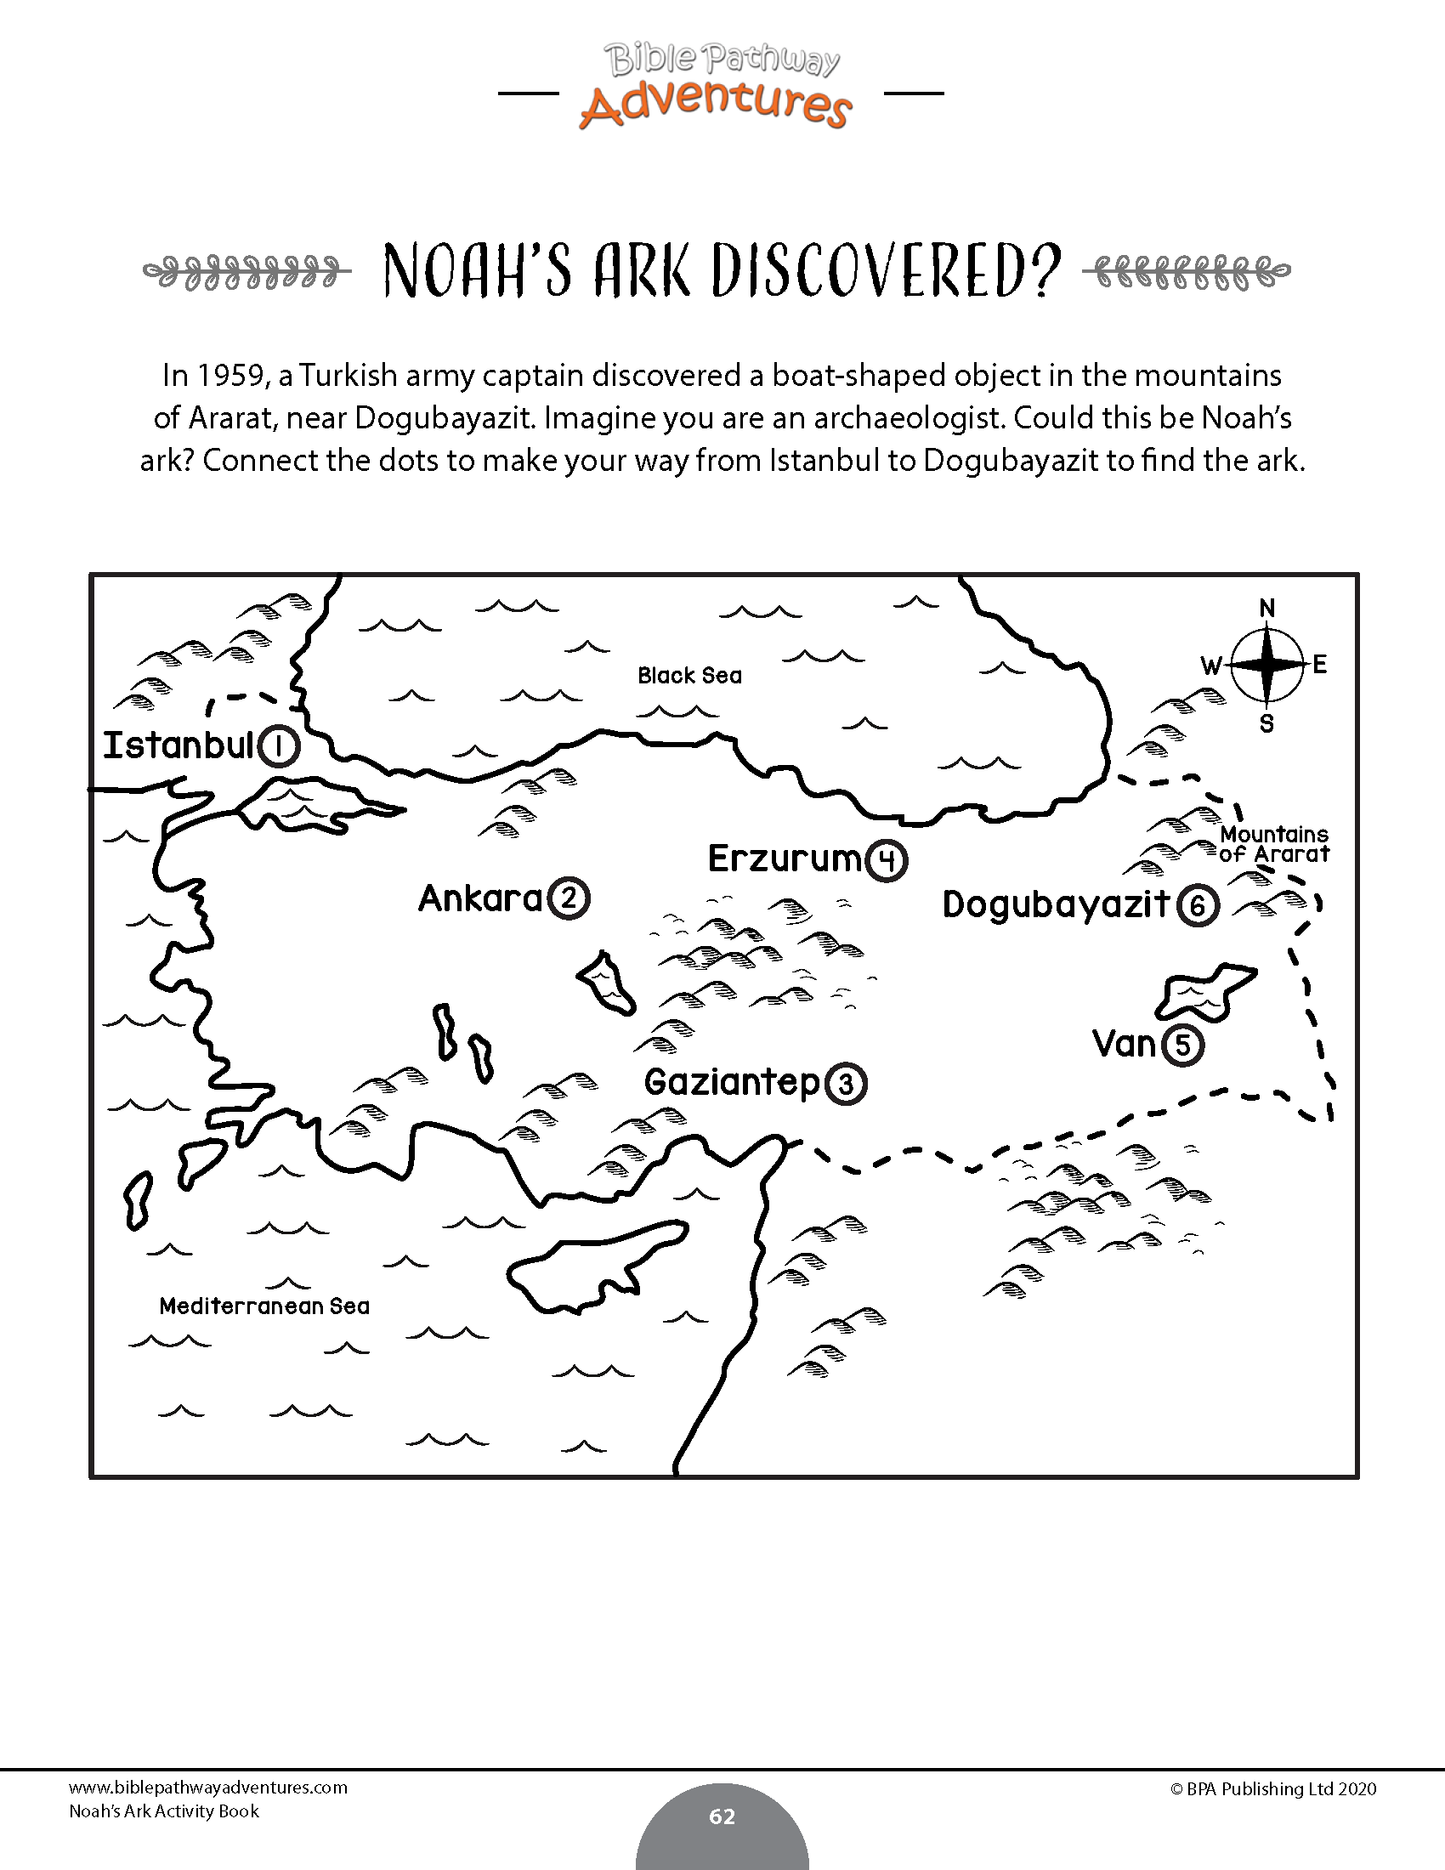 Libro de actividades del Arca de Noé